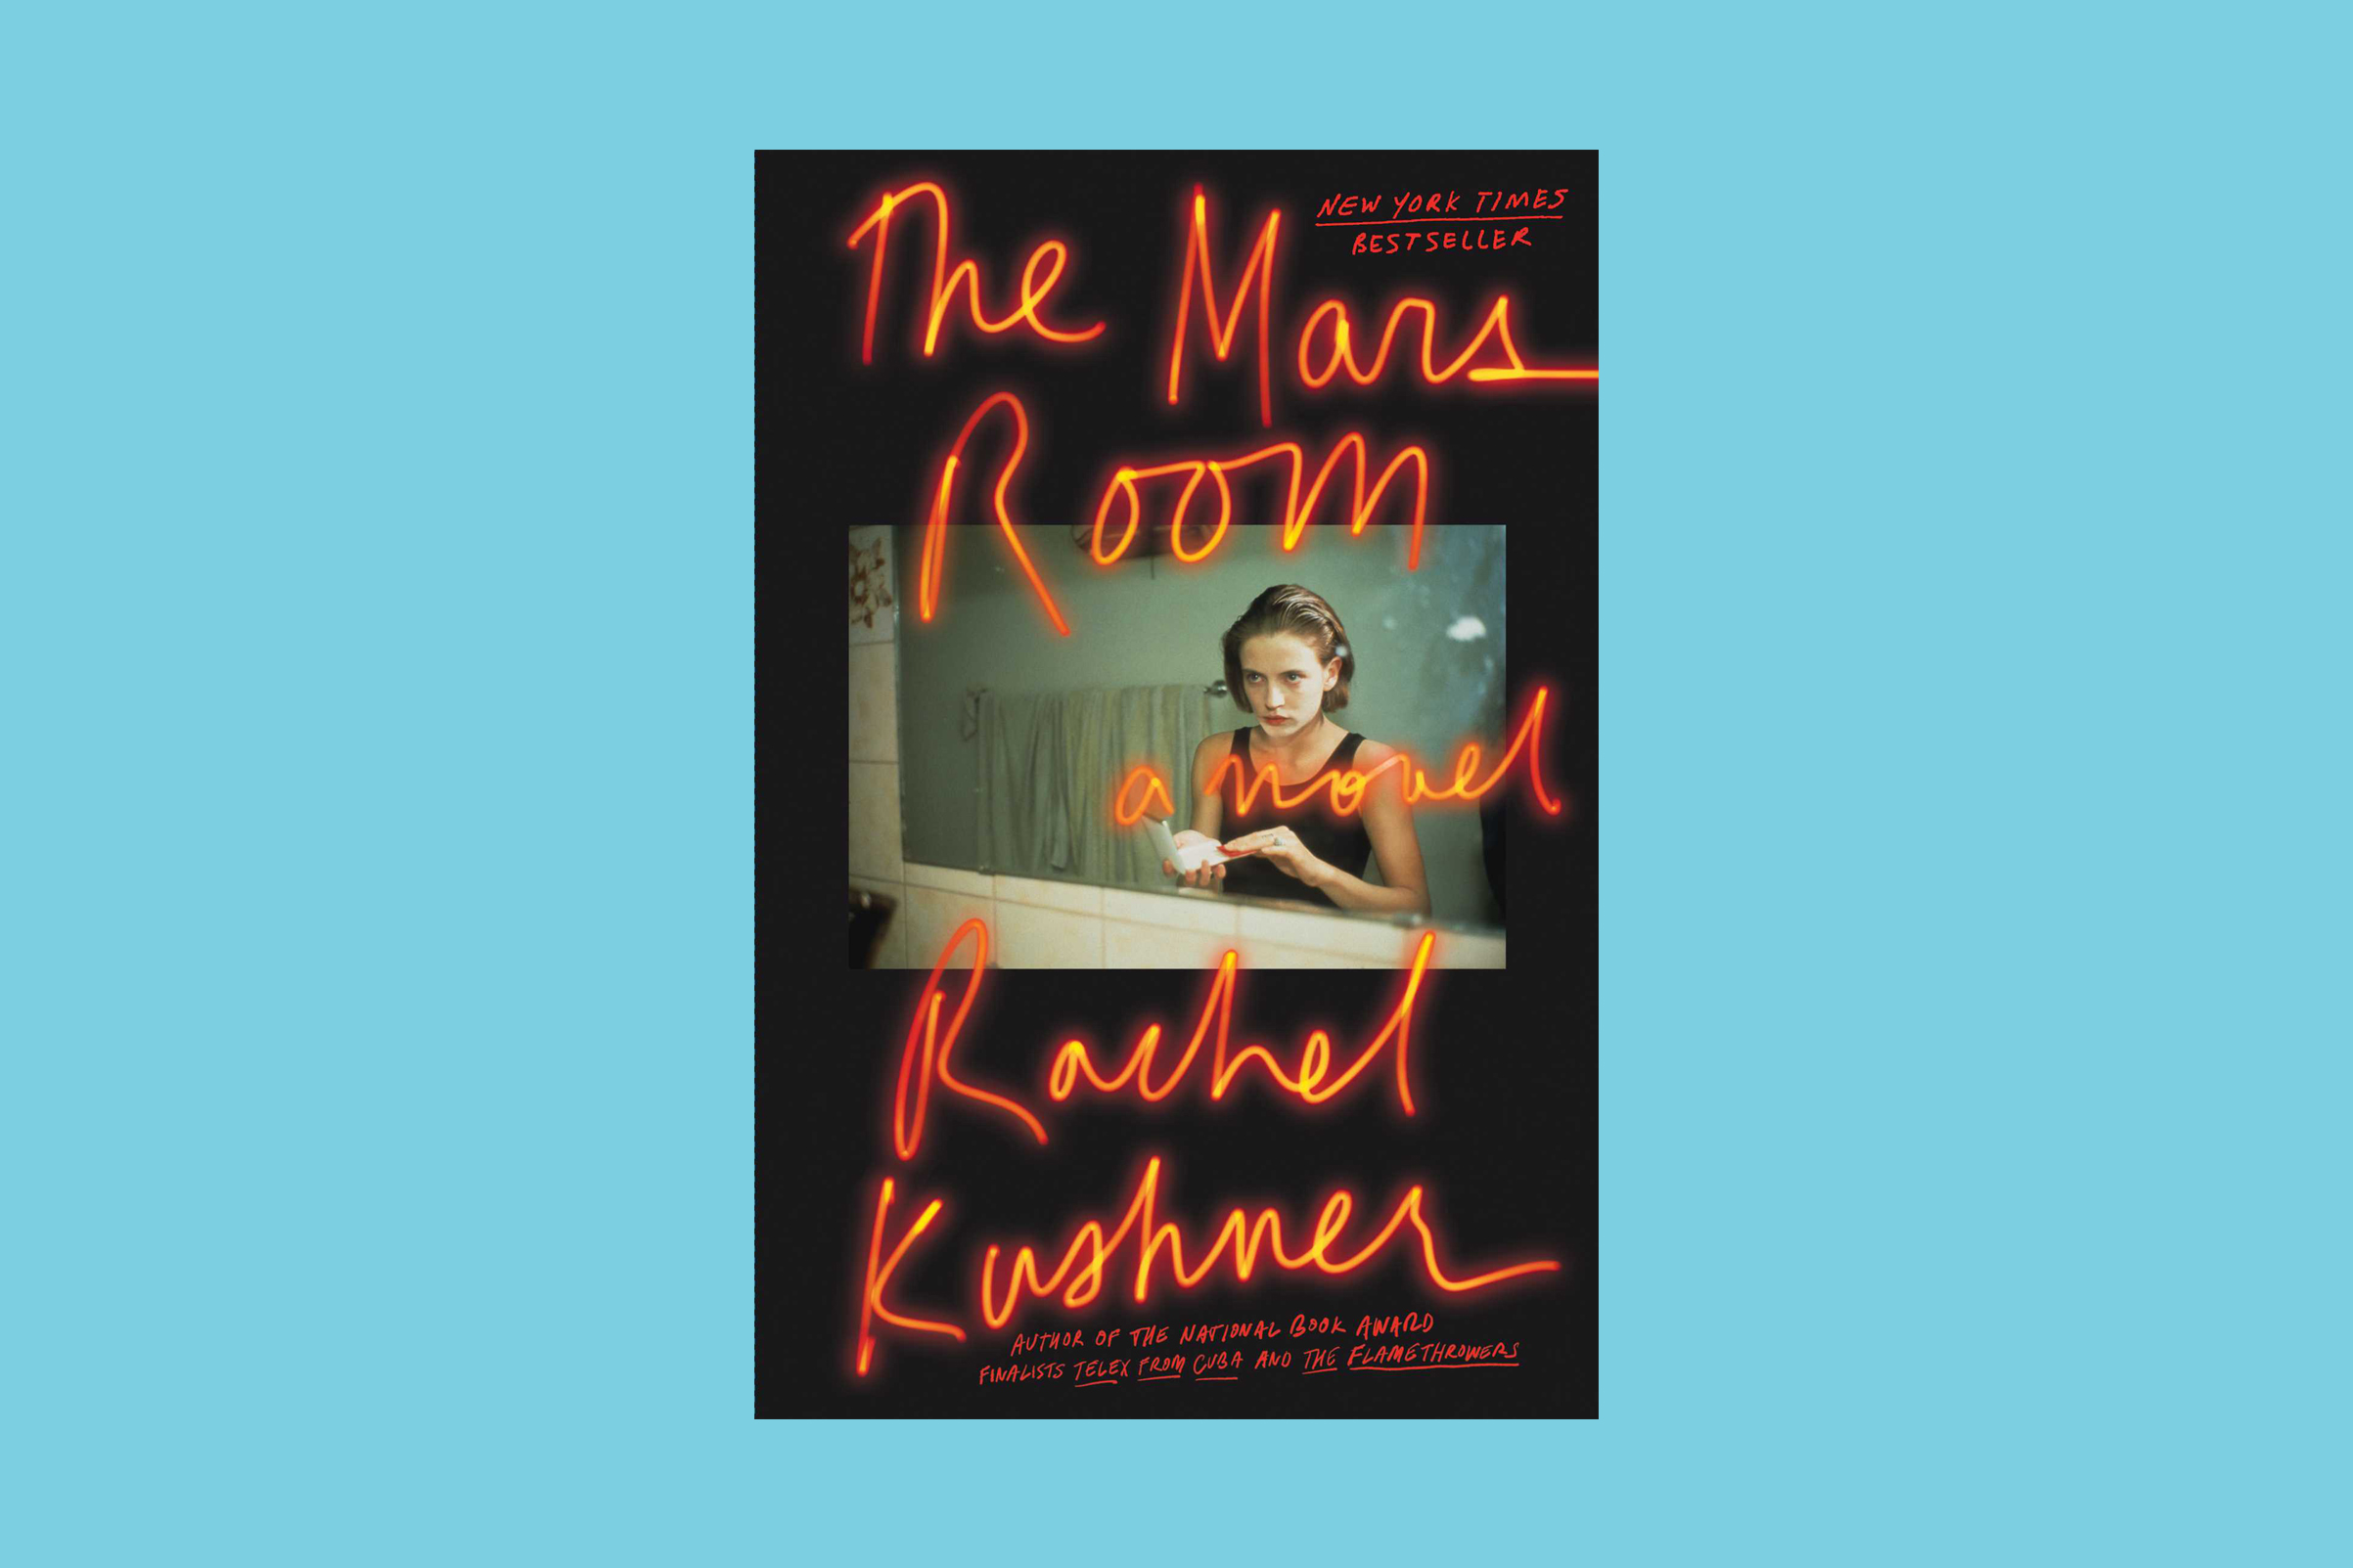 The Mars Room, Rachel Kushner, Scribner